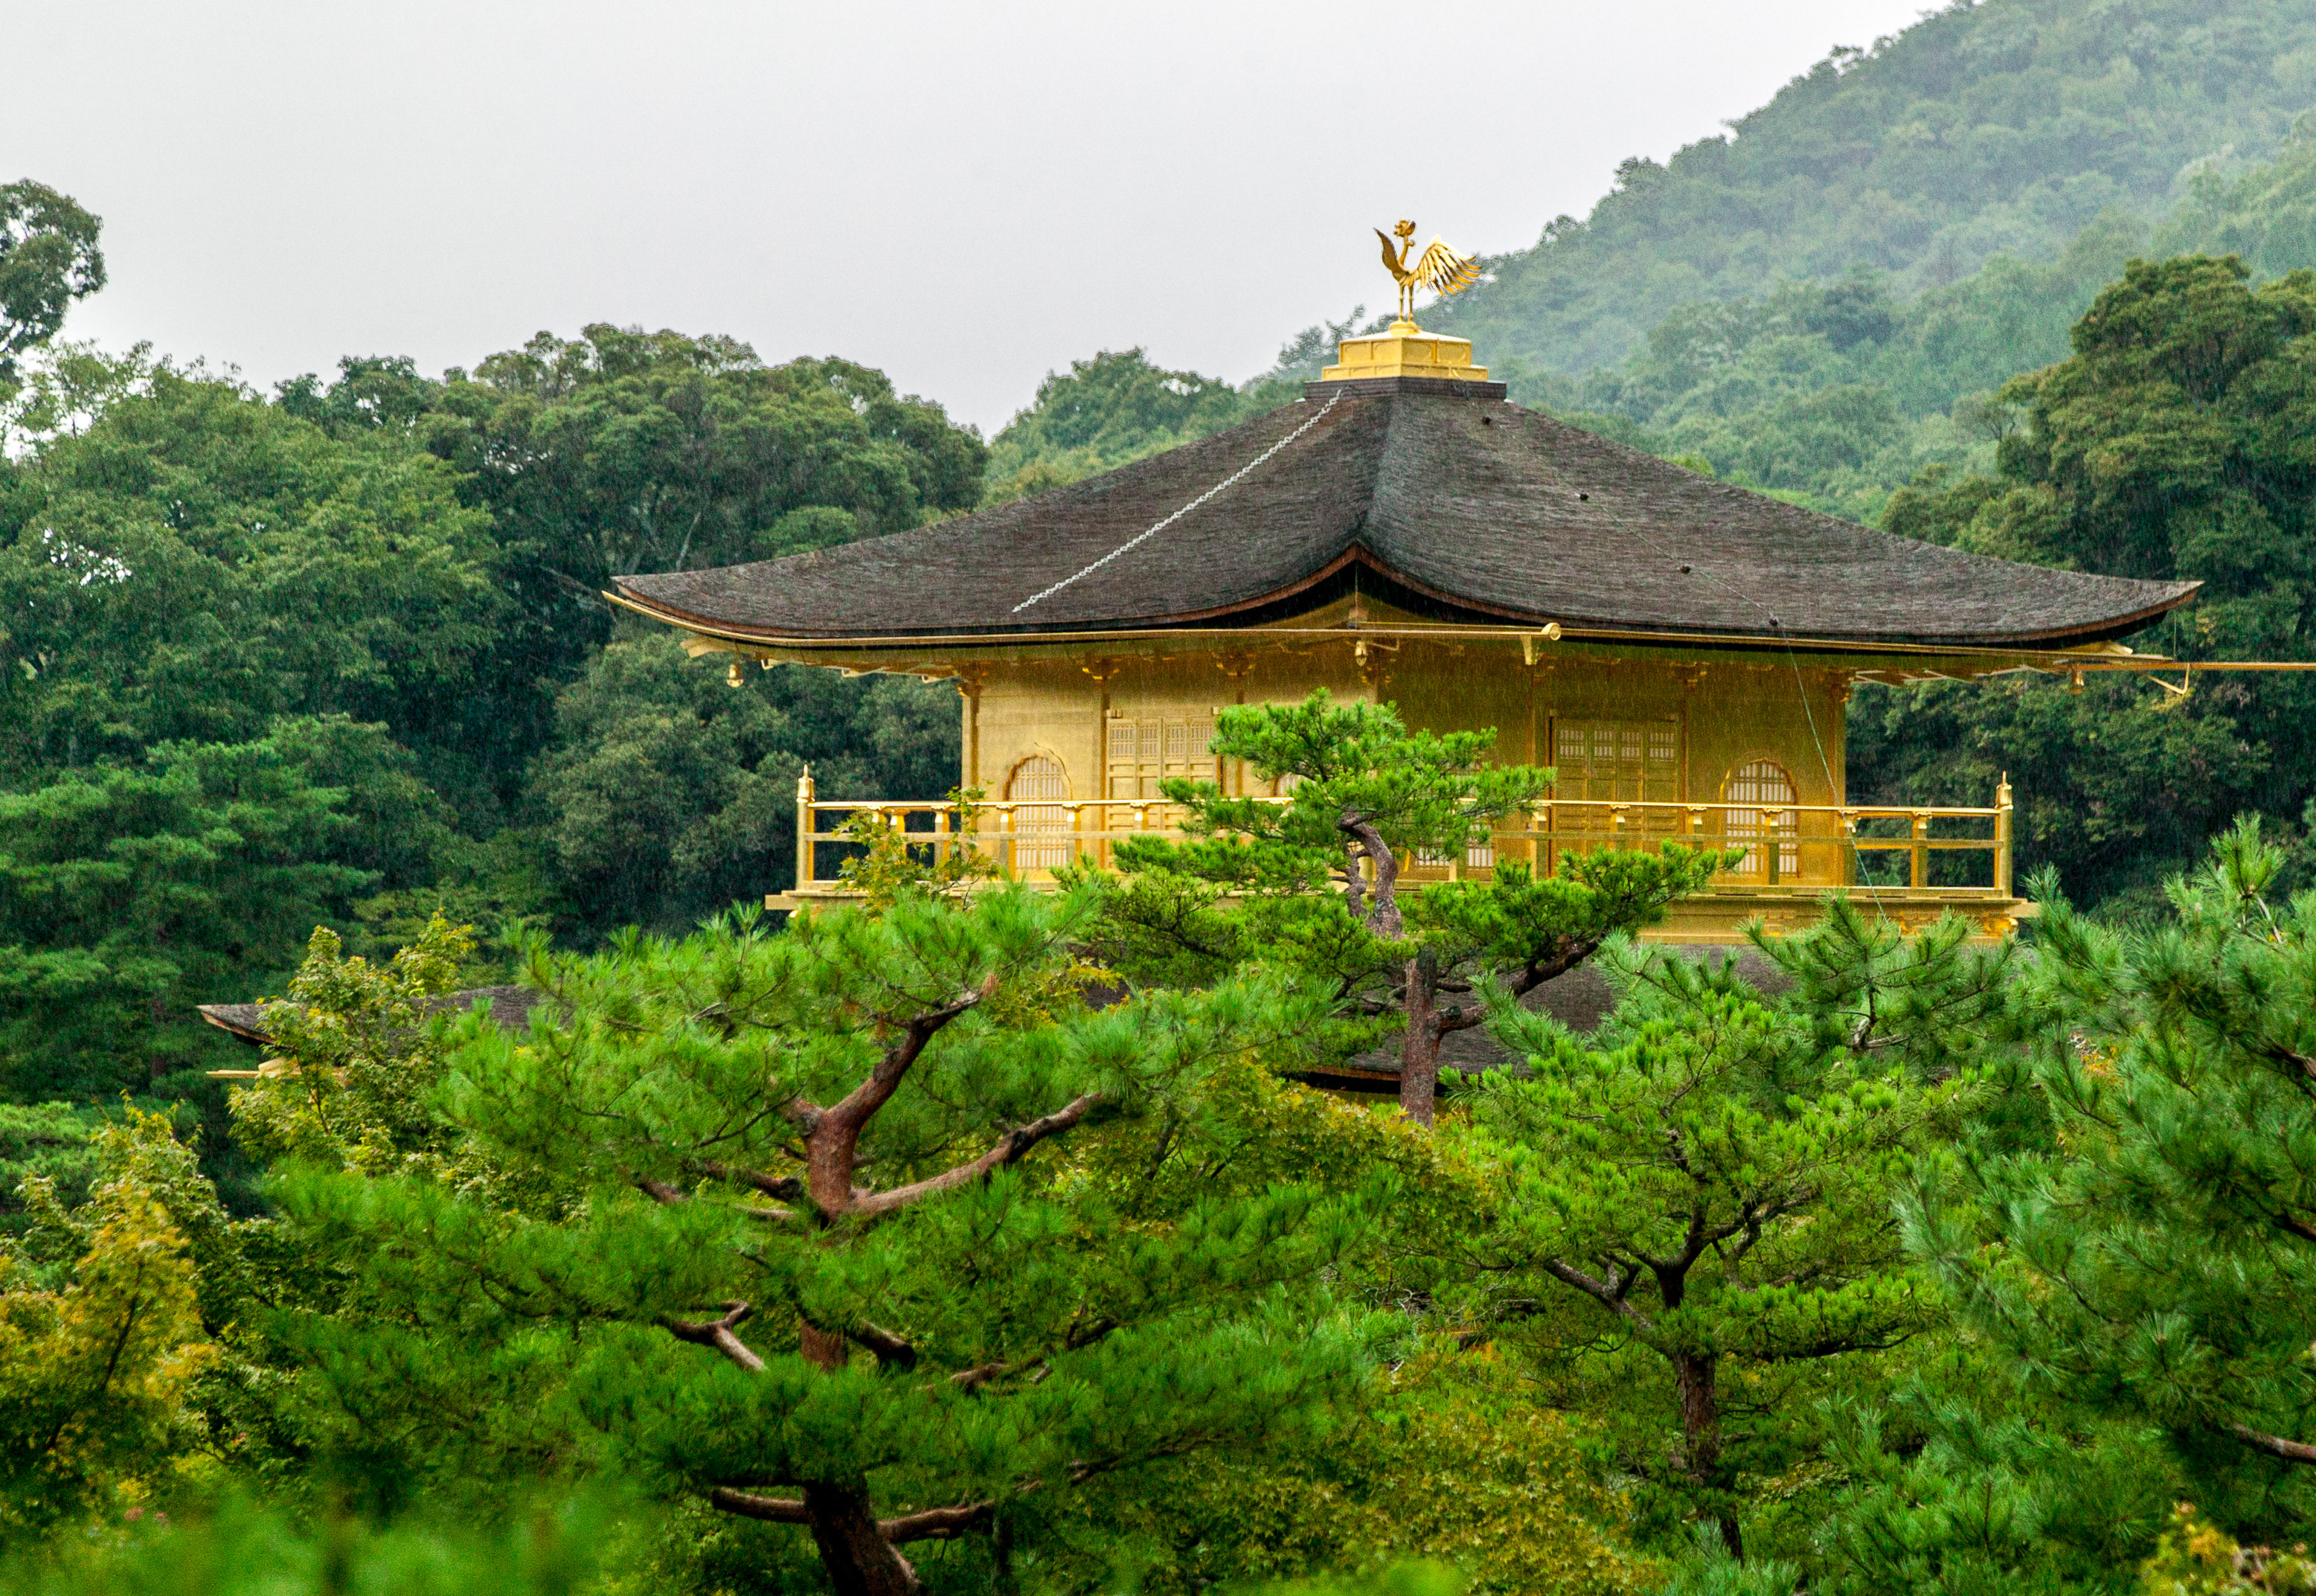 Kinkakuji Temple (Golden Pavilion), part of Rokuonji Temple